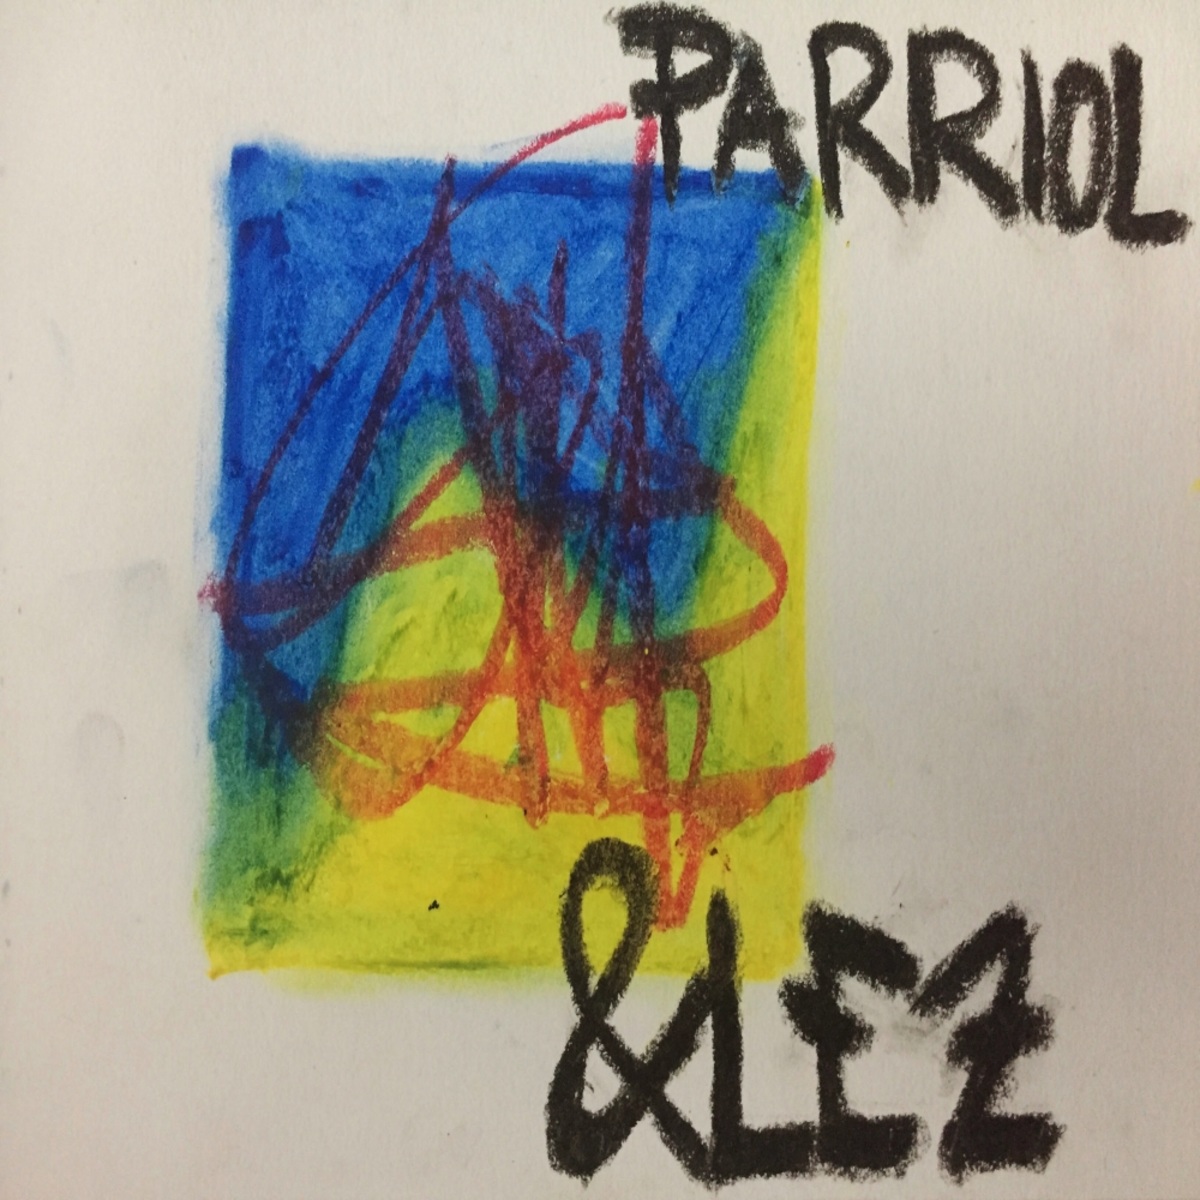 &lez - Parriol / Visile Records